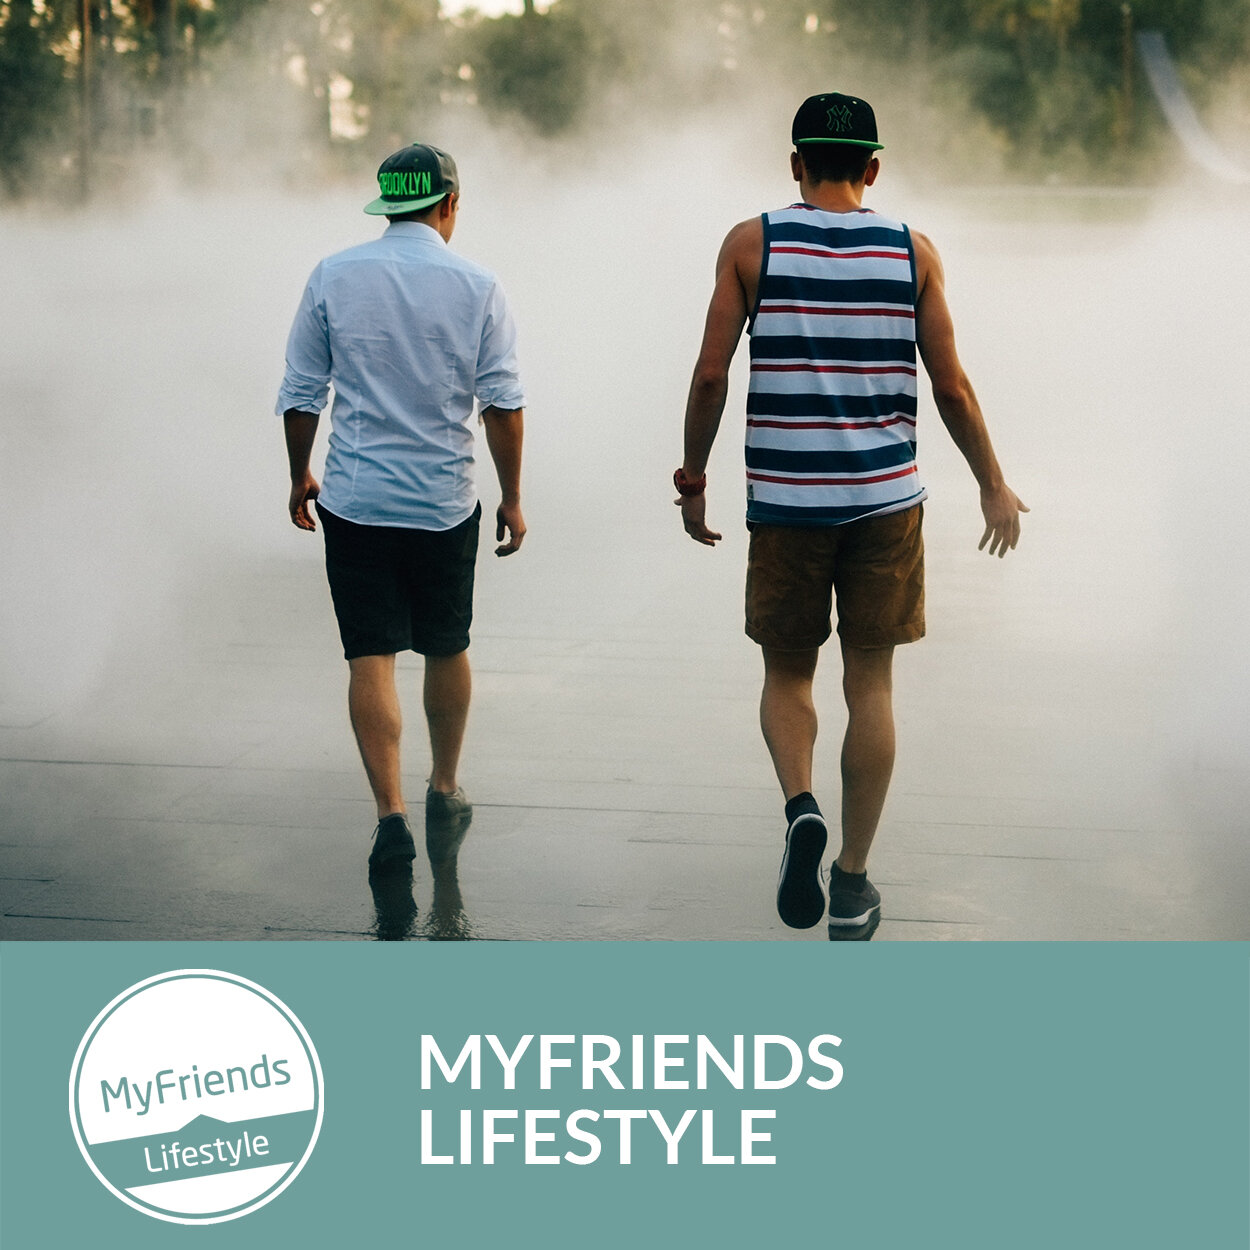 Myfriends_lifestyle.jpg